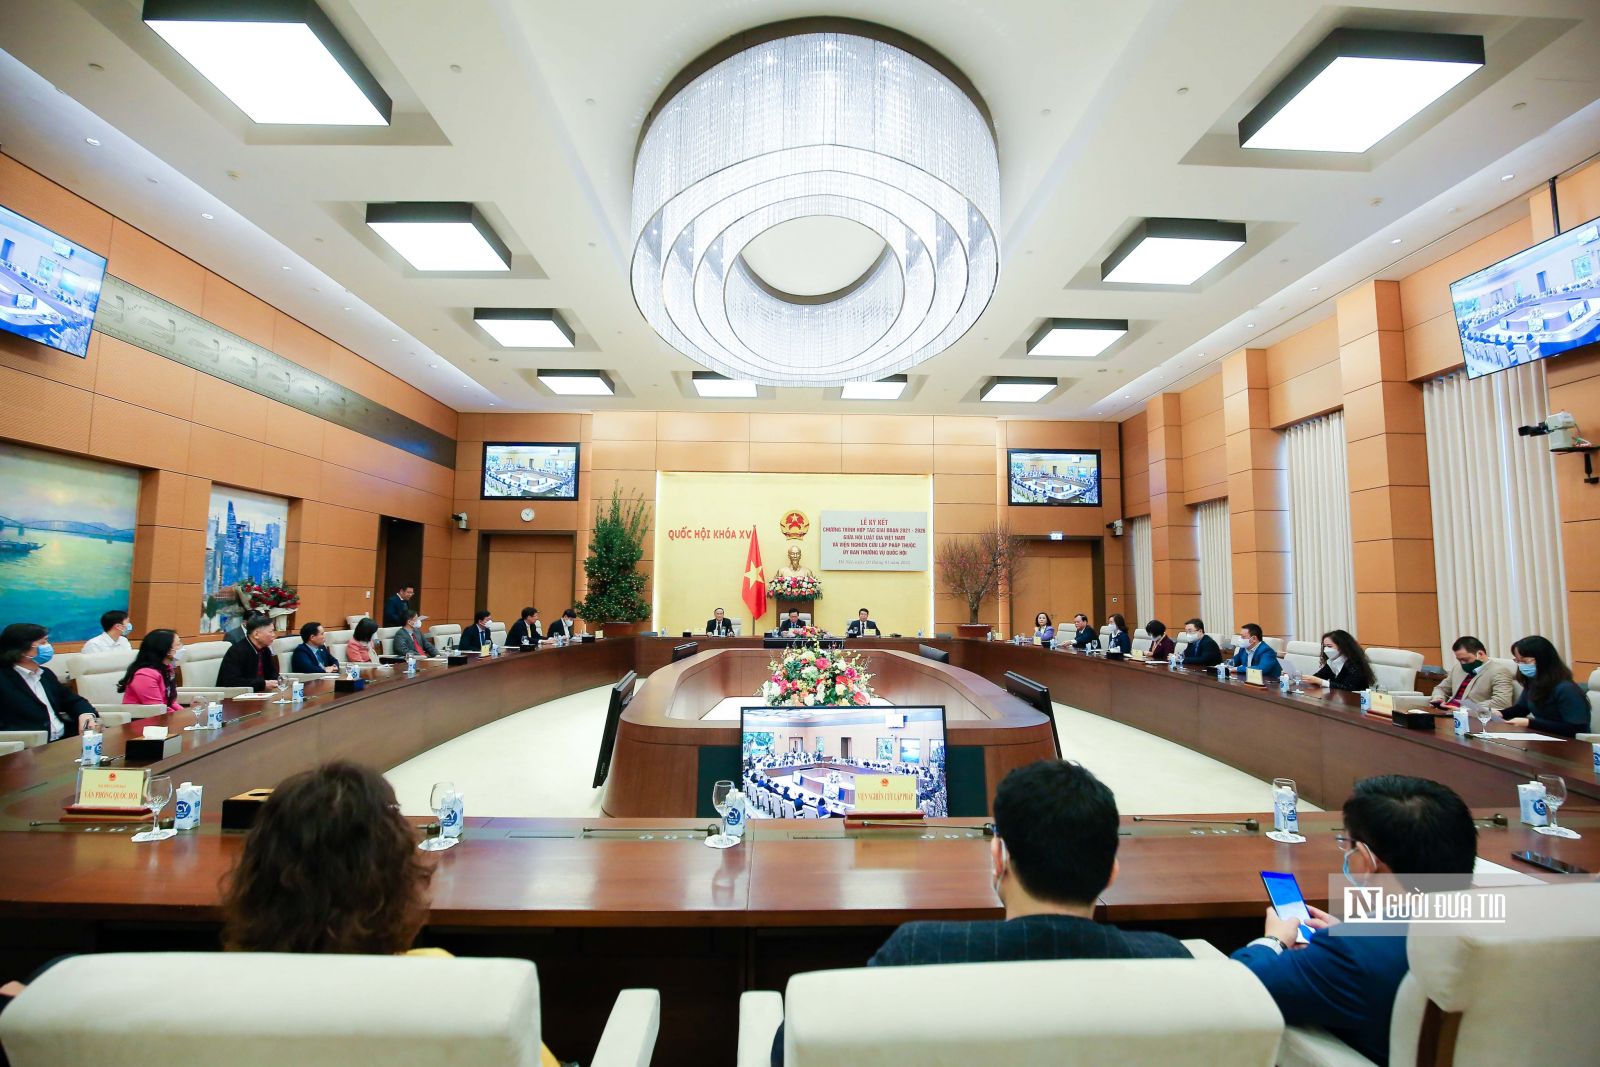 Lễ ký kết chương trình hợp tác giai đoạn 2021-2026 giữa Hội Luật gia Việt Nam và Viện Nghiên cứu lập pháp